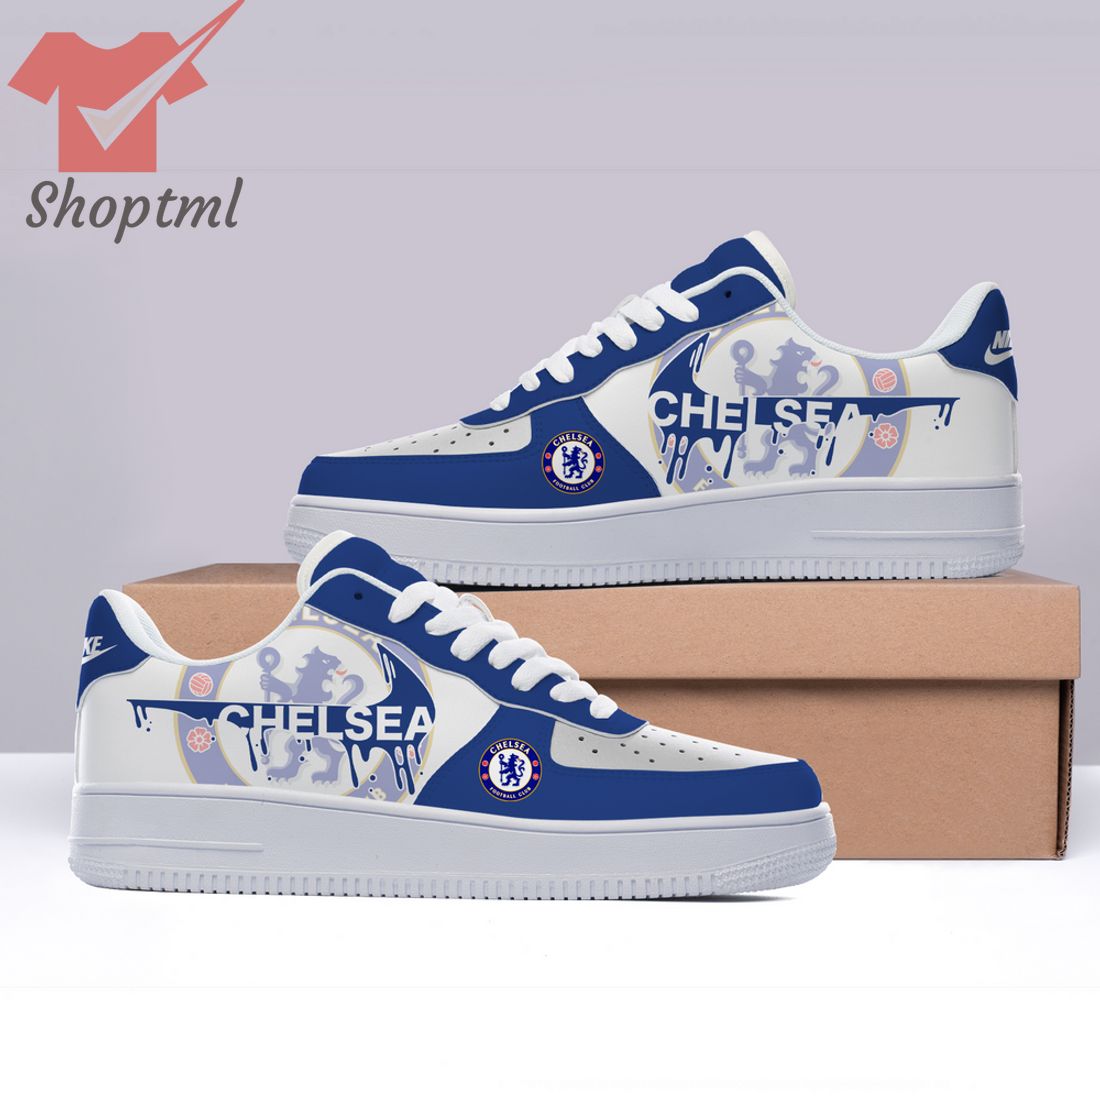 Chelsea FC Custom Nike Air Force Sneakers